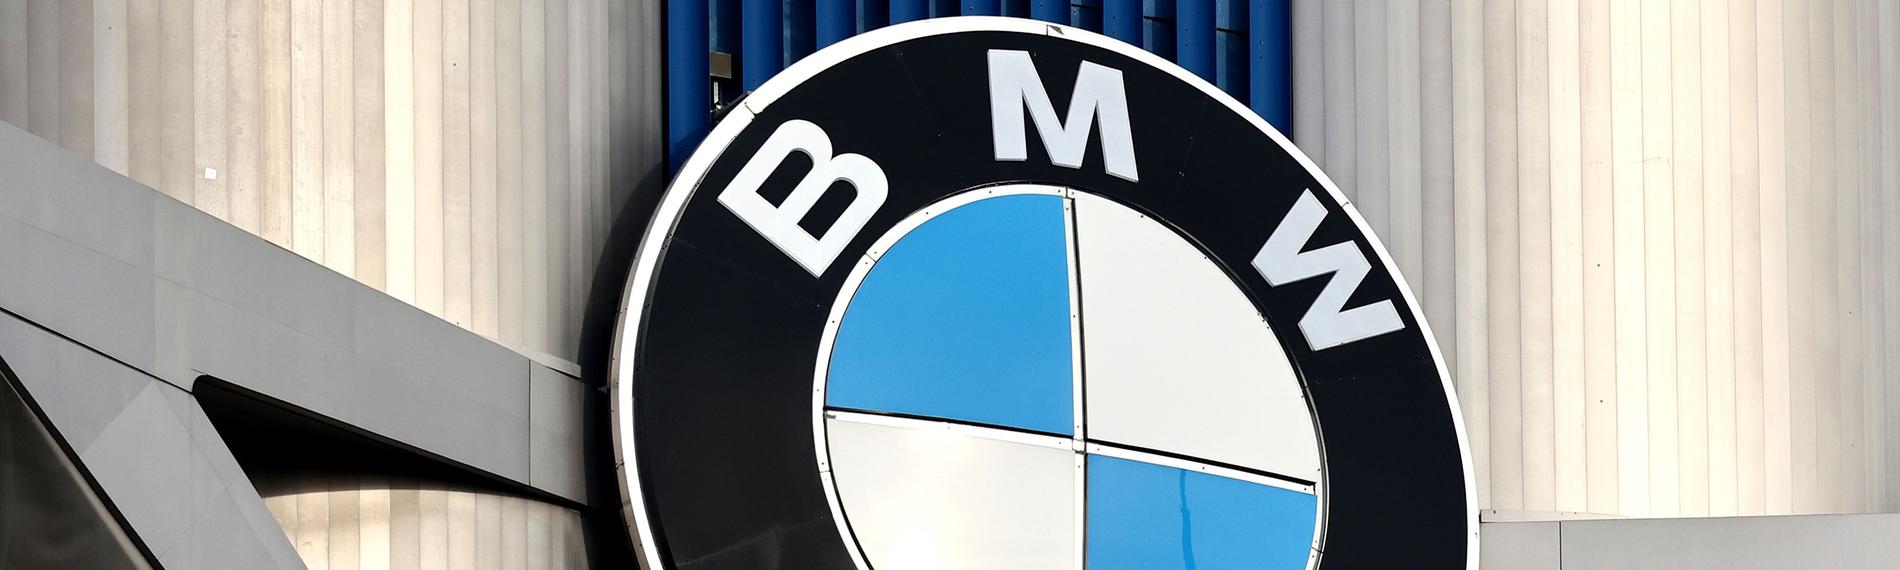 Das Logo der Bayerische Motoren Werke AG (BMW) auf dem Hauptsitz von BMW in München ist zu sehen.